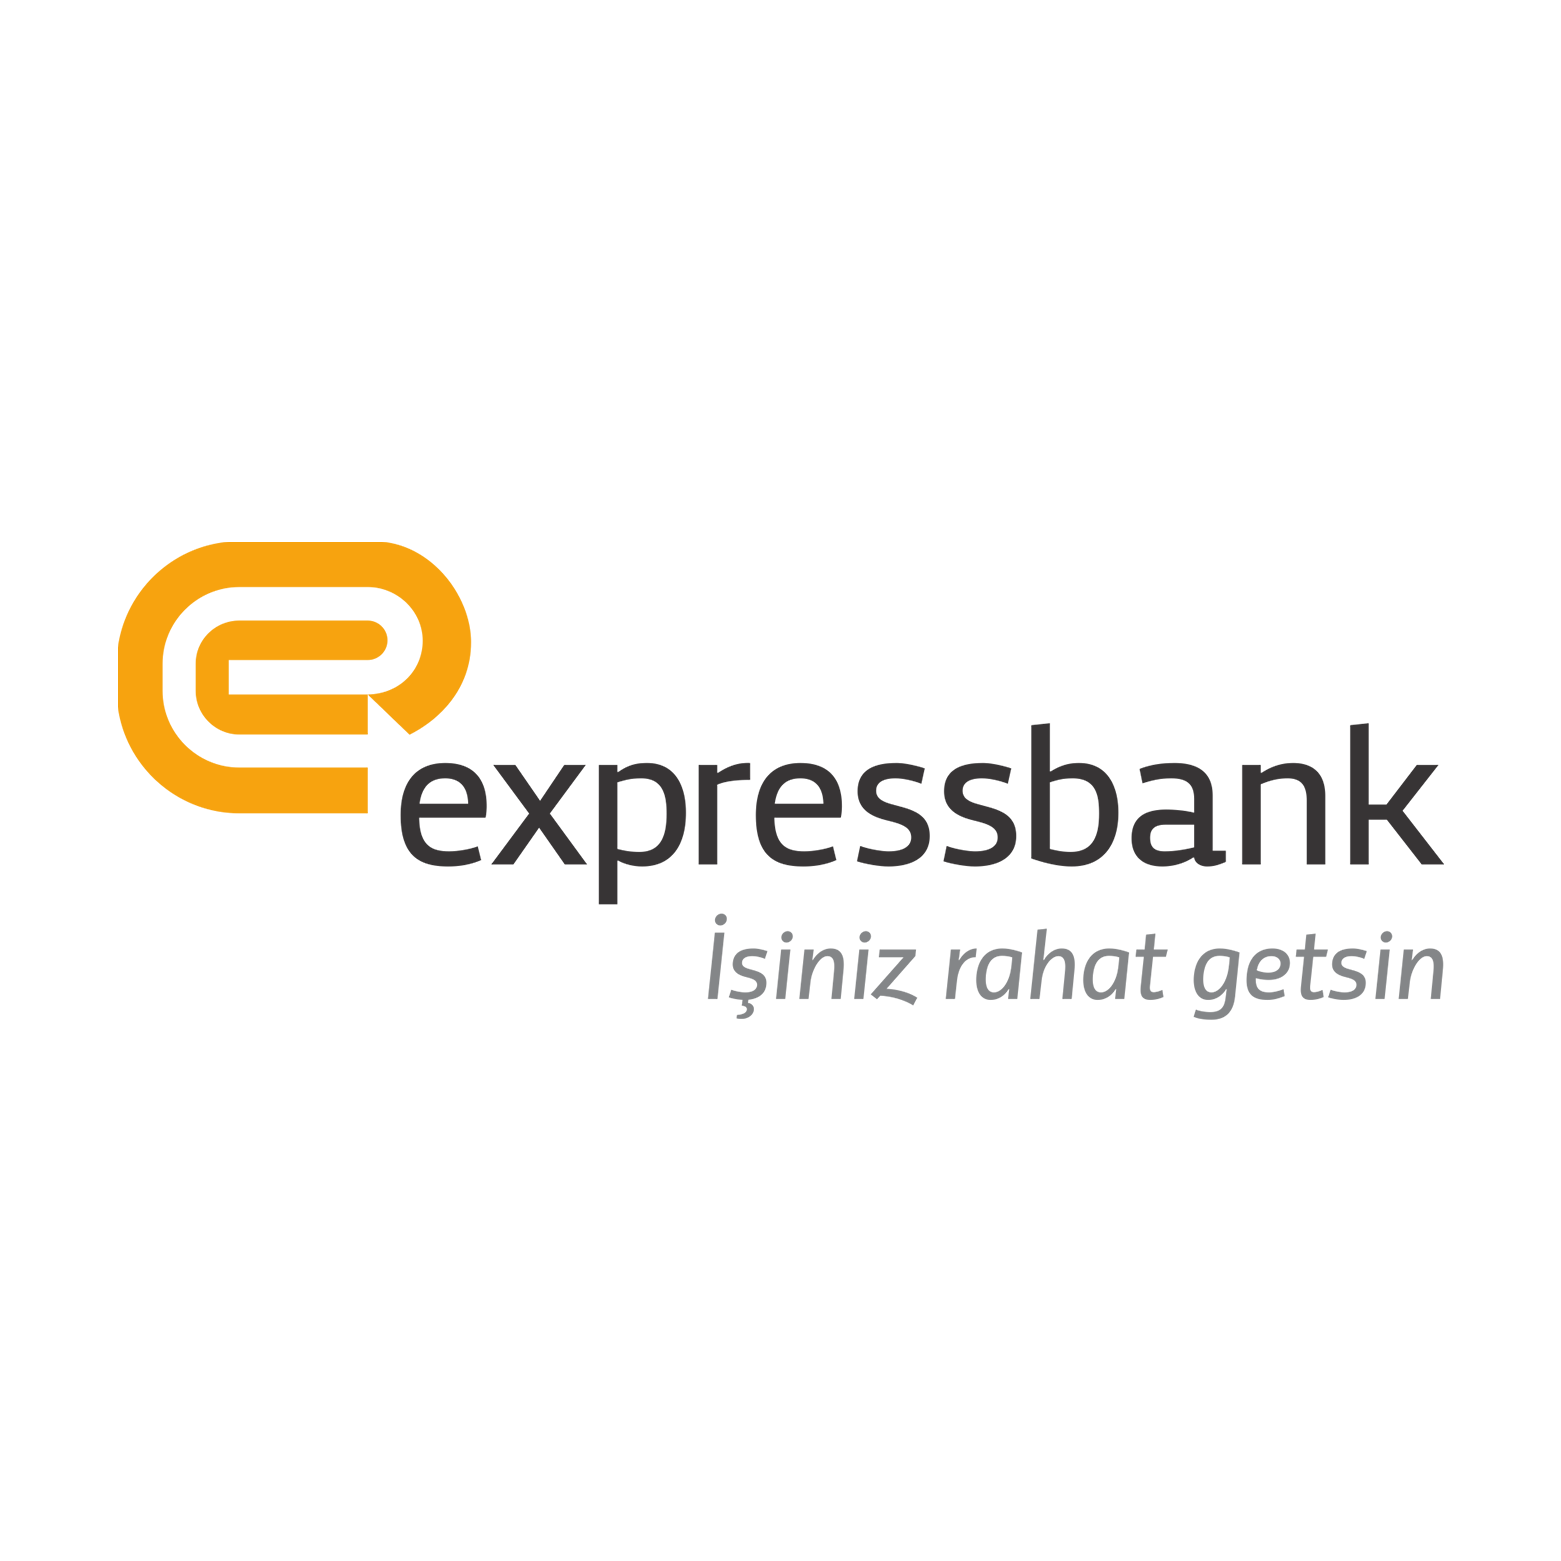 Чистая прибыль Expressbank увеличилась более чем в 3 раза за последний год